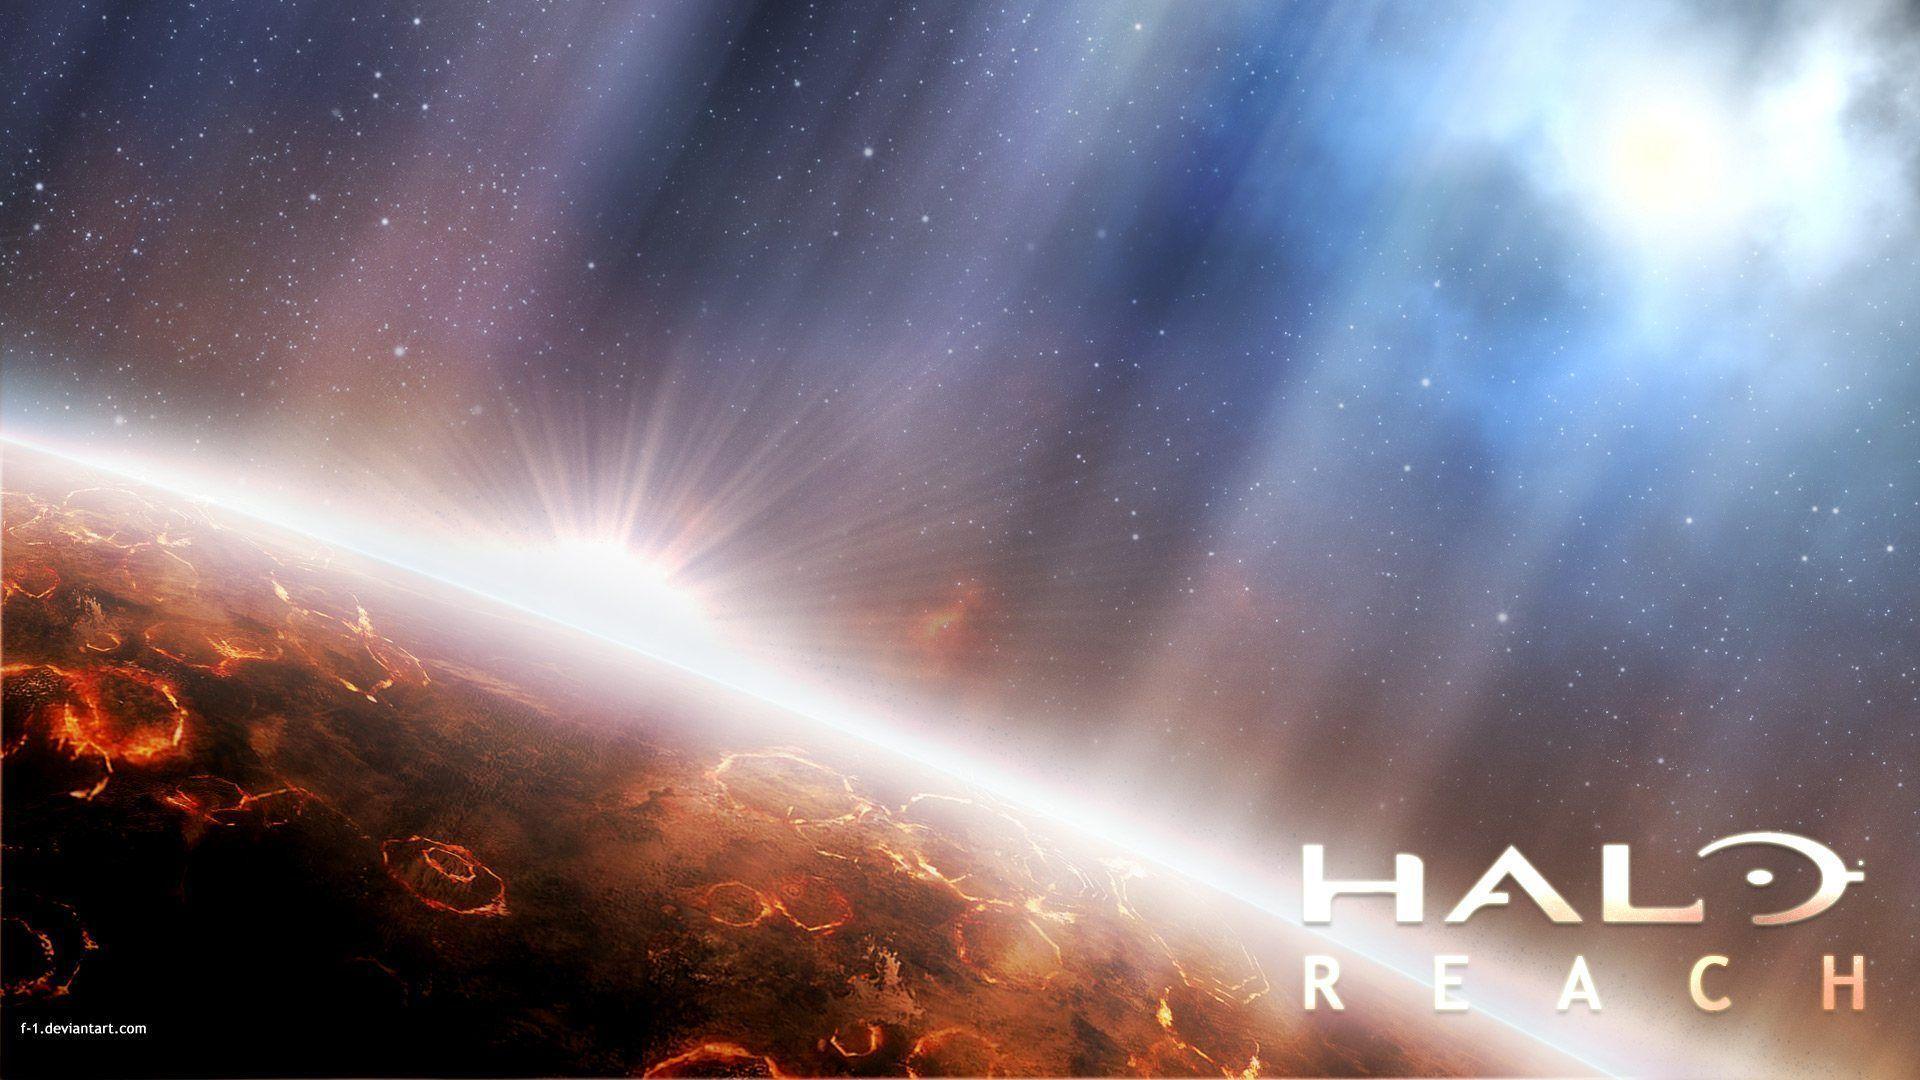 Halo Reach Wallpaper in HD